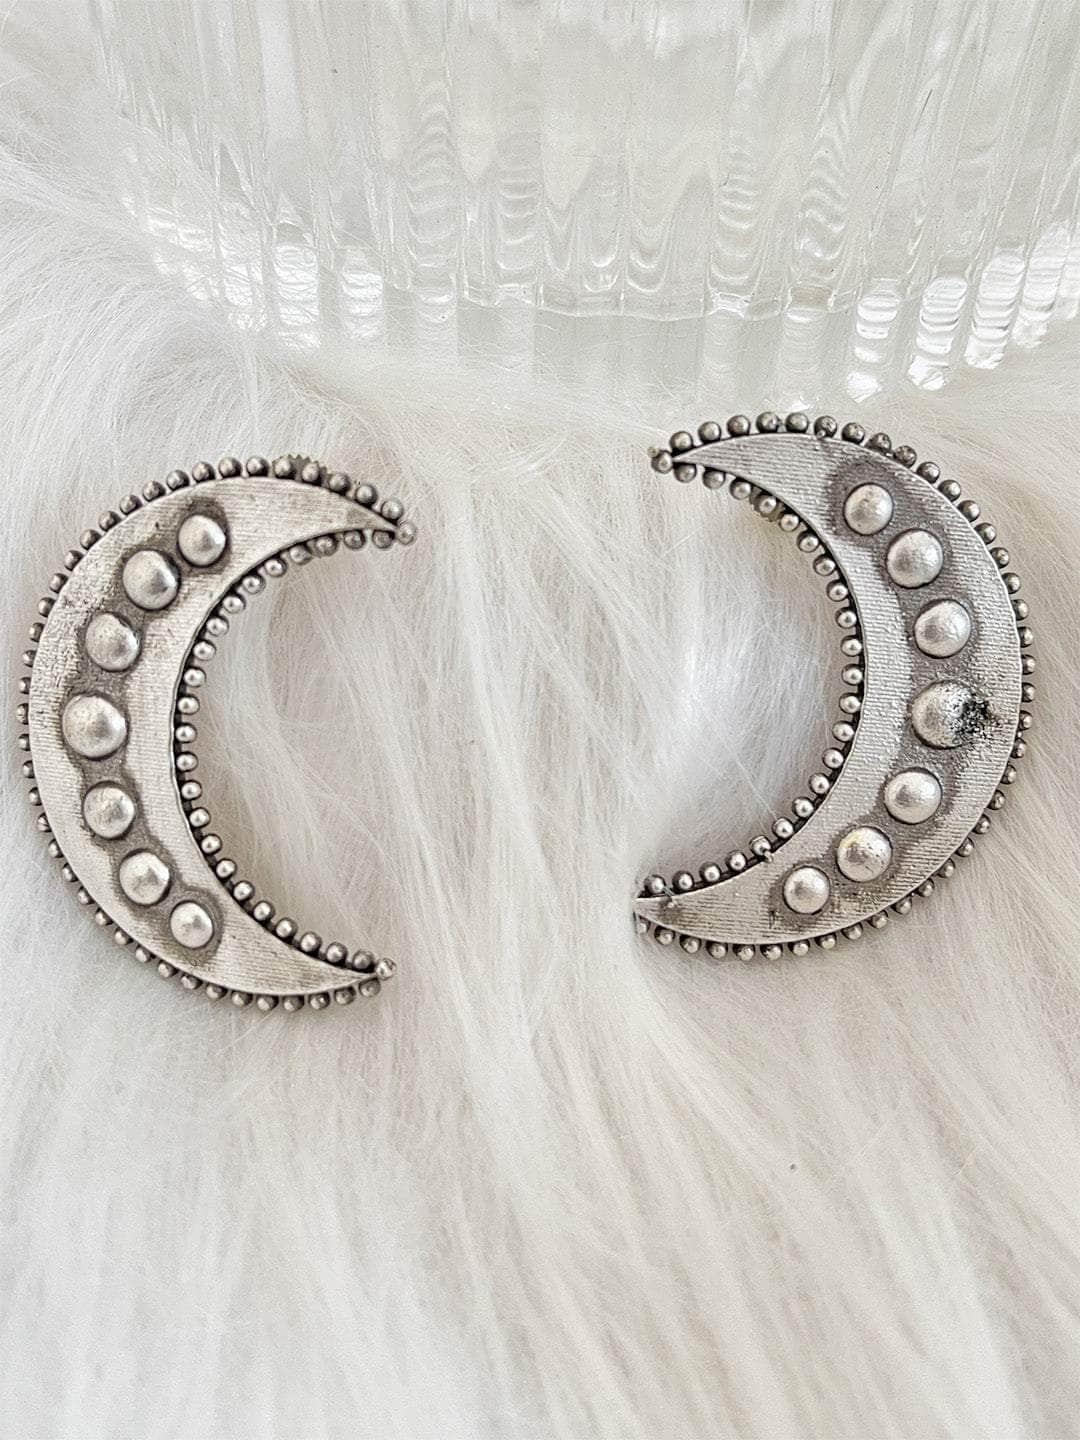 Ishhaara Moon Design Stud Earrings